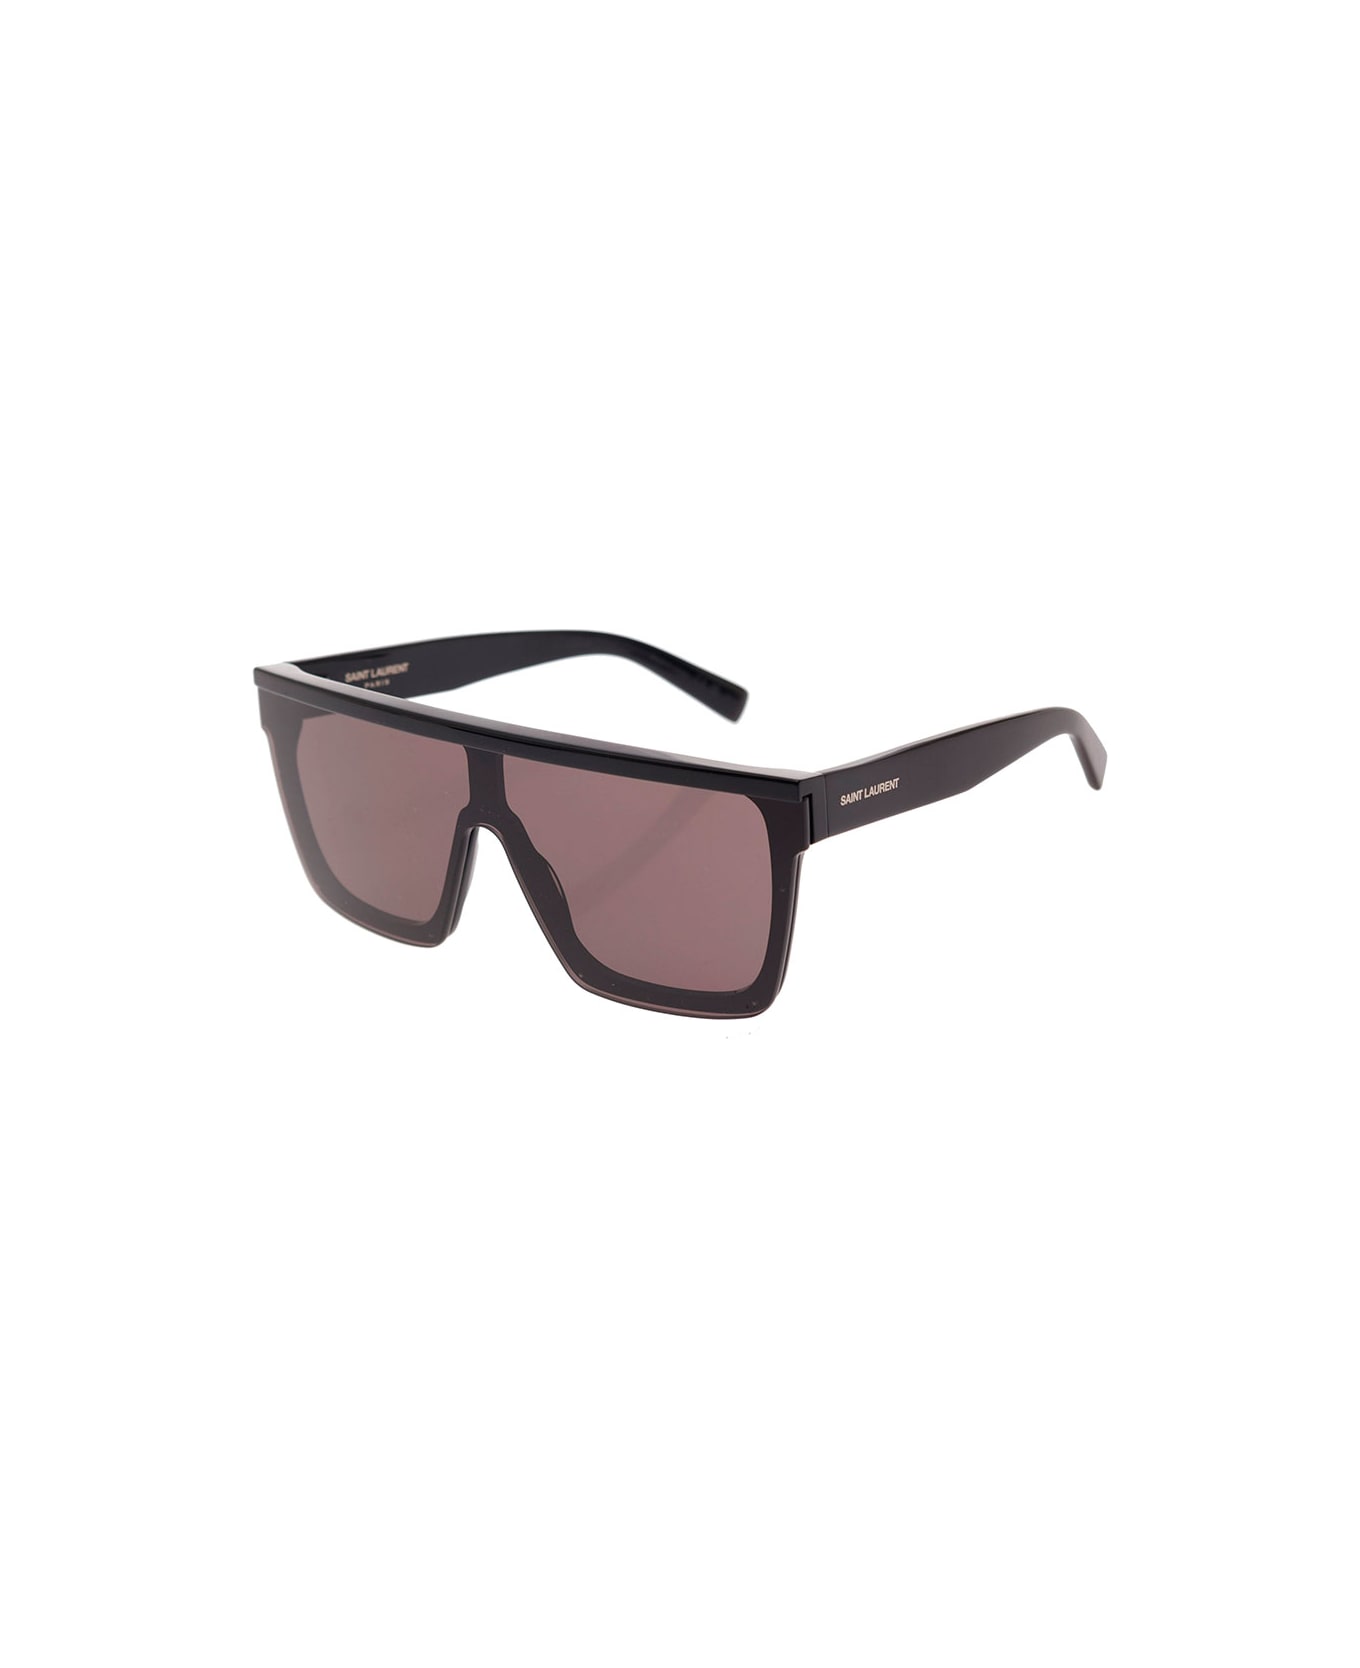 Saint Laurent Sl 607 Sunglasses - Black アイウェア